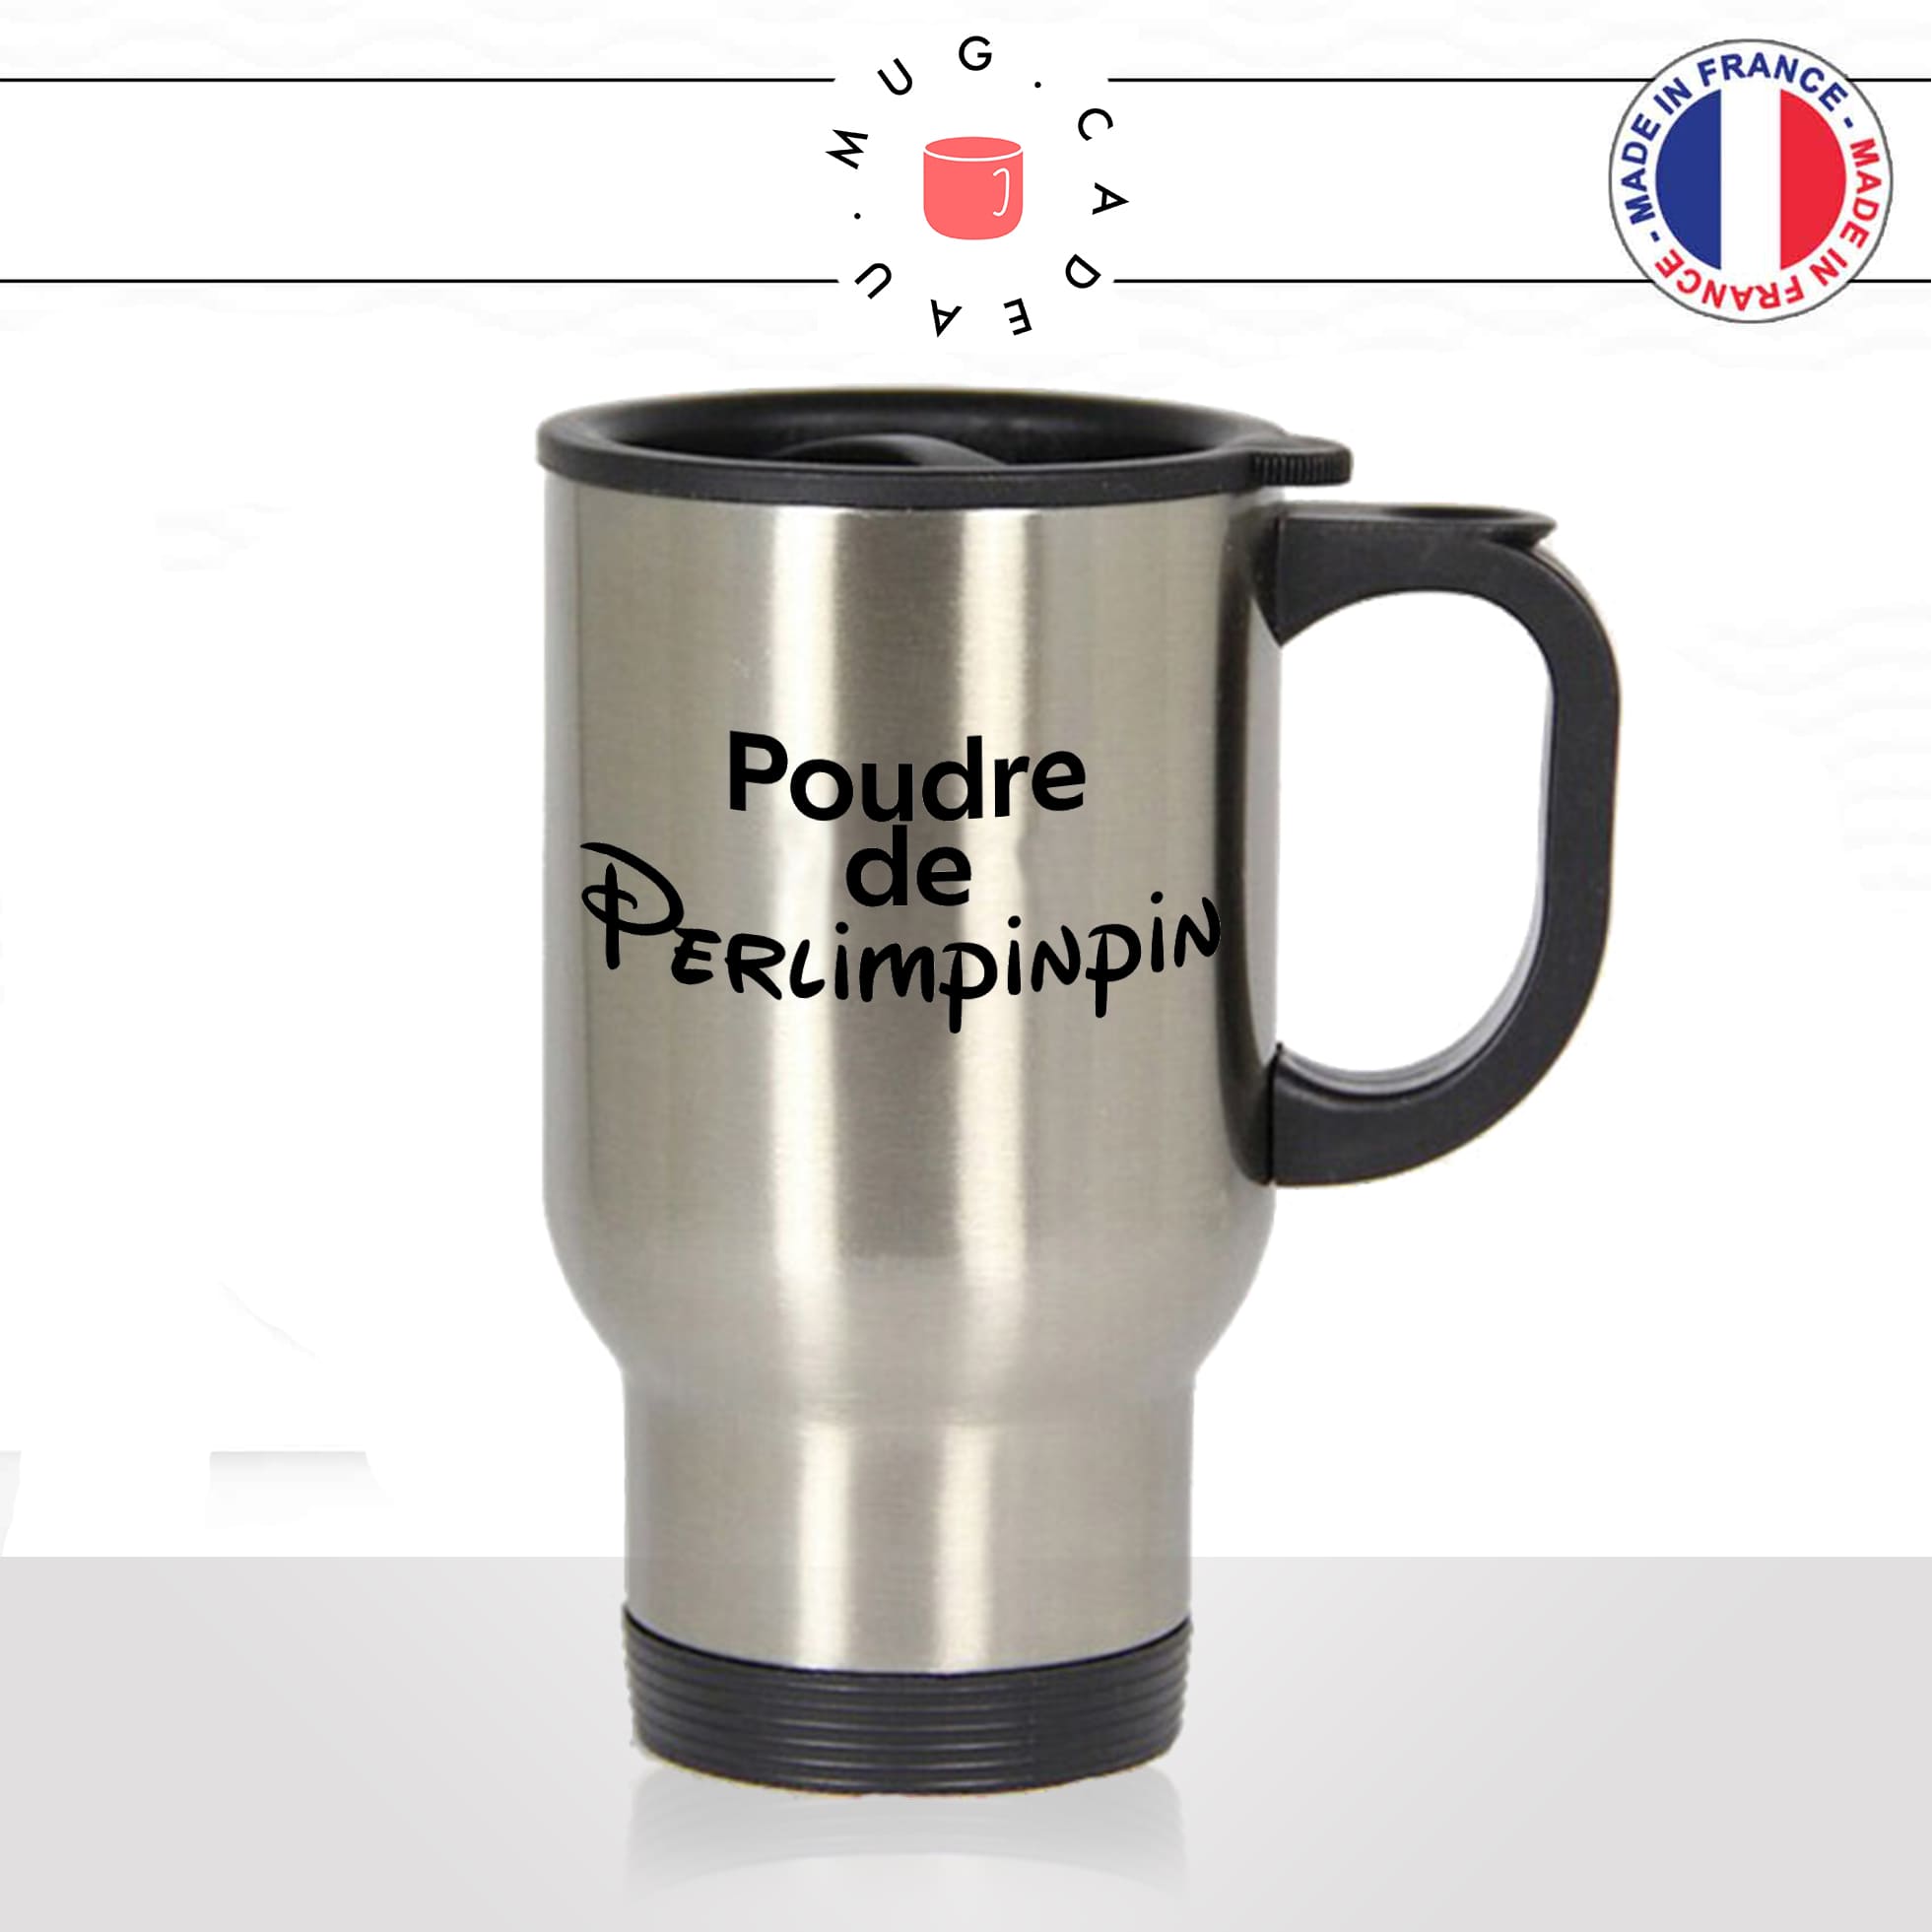 mug-tasse-thermos-isotherme-voyage-poudre-de-perlimpinpin-drole-fée-magie-magique-humour-fun-idée-cadeau-originale-cool2